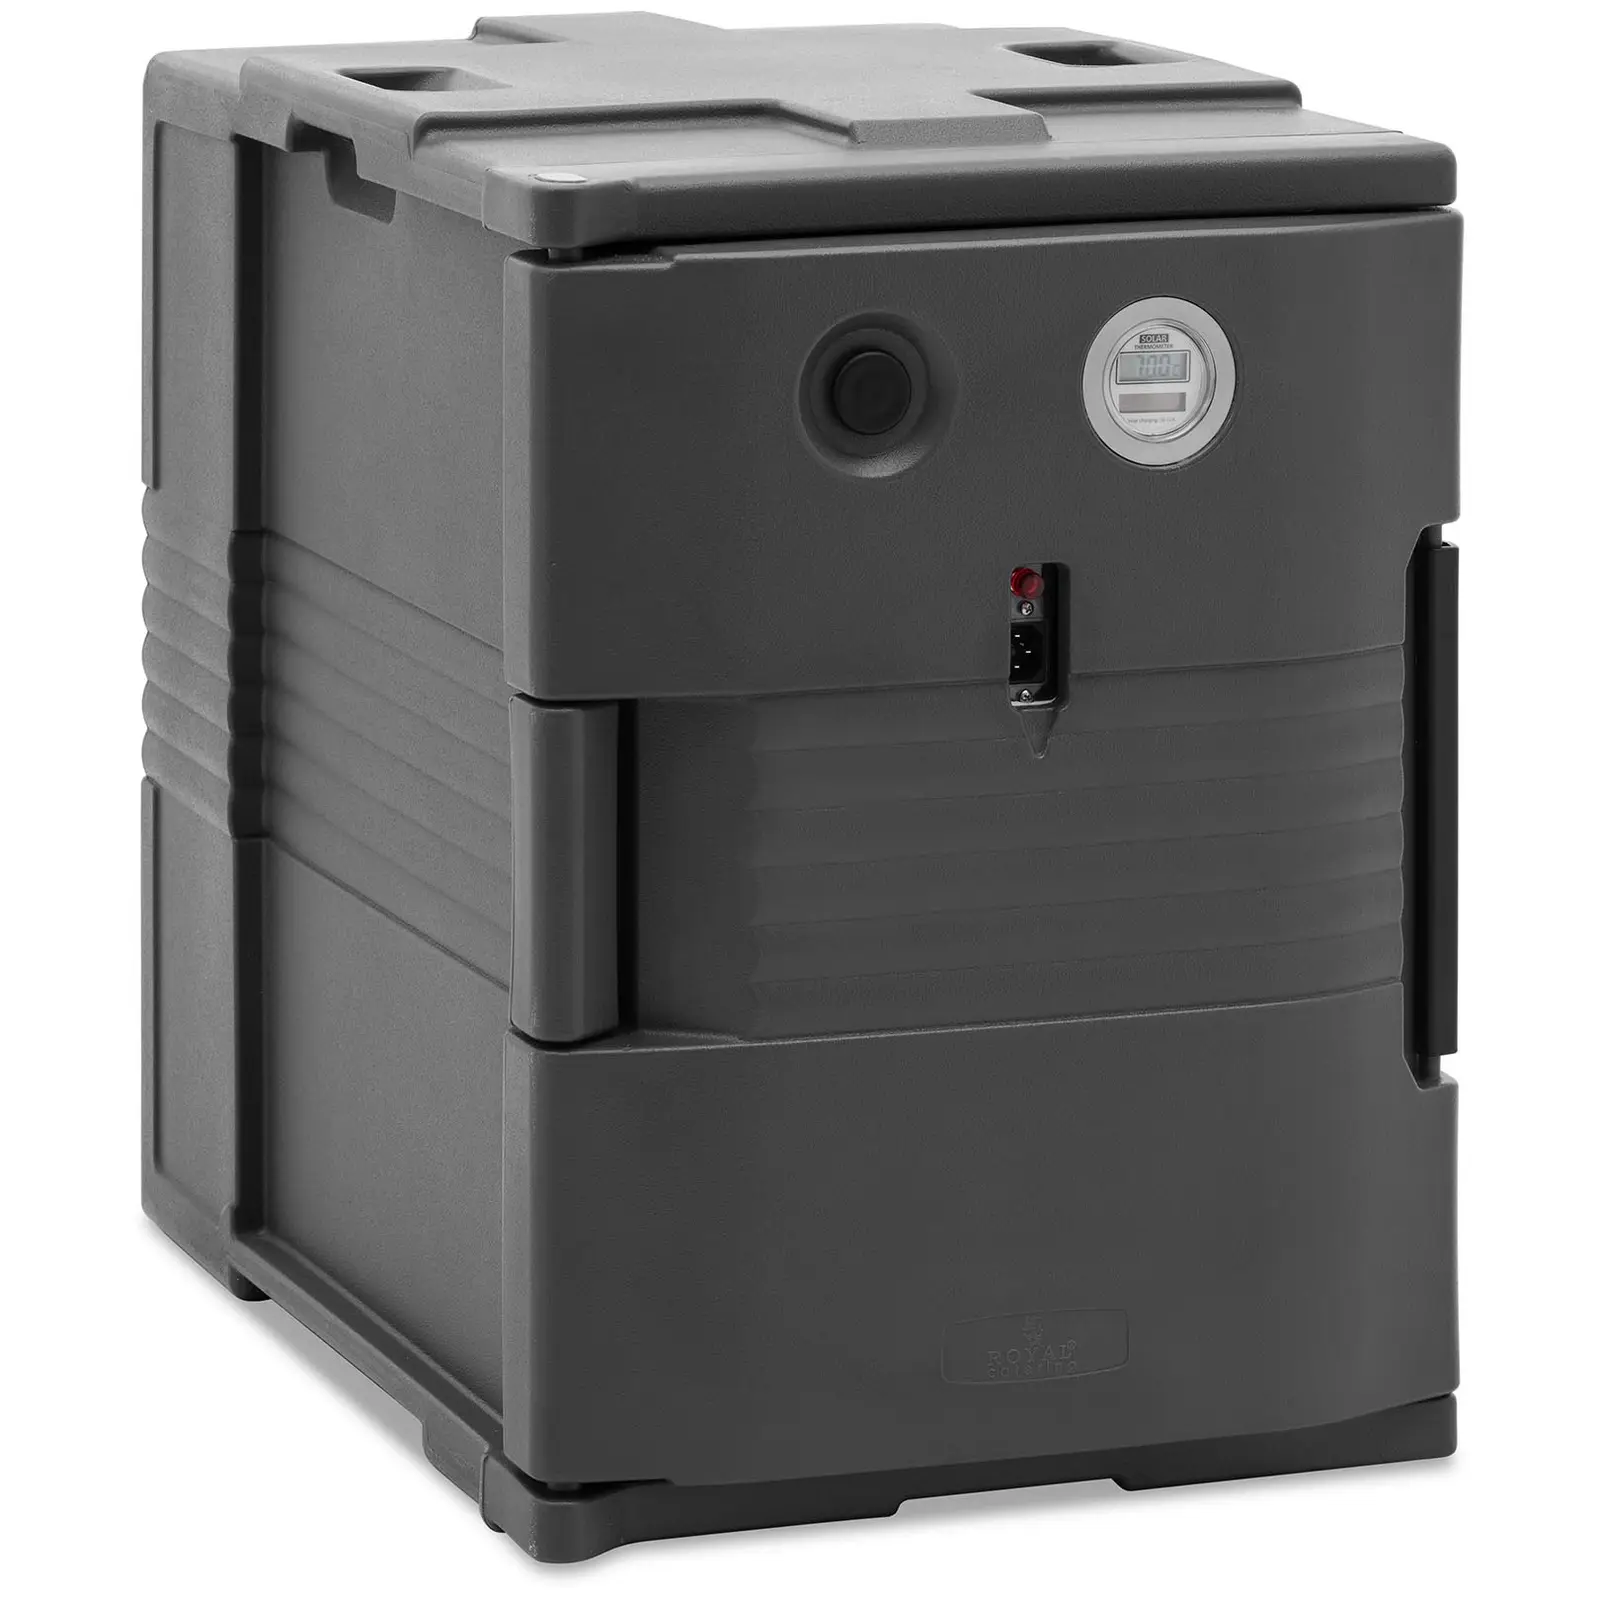 Caja térmica para alimentos calefactada - 90 L - para contenedores GN 1/1 - carga frontal - con indicador de temperatura